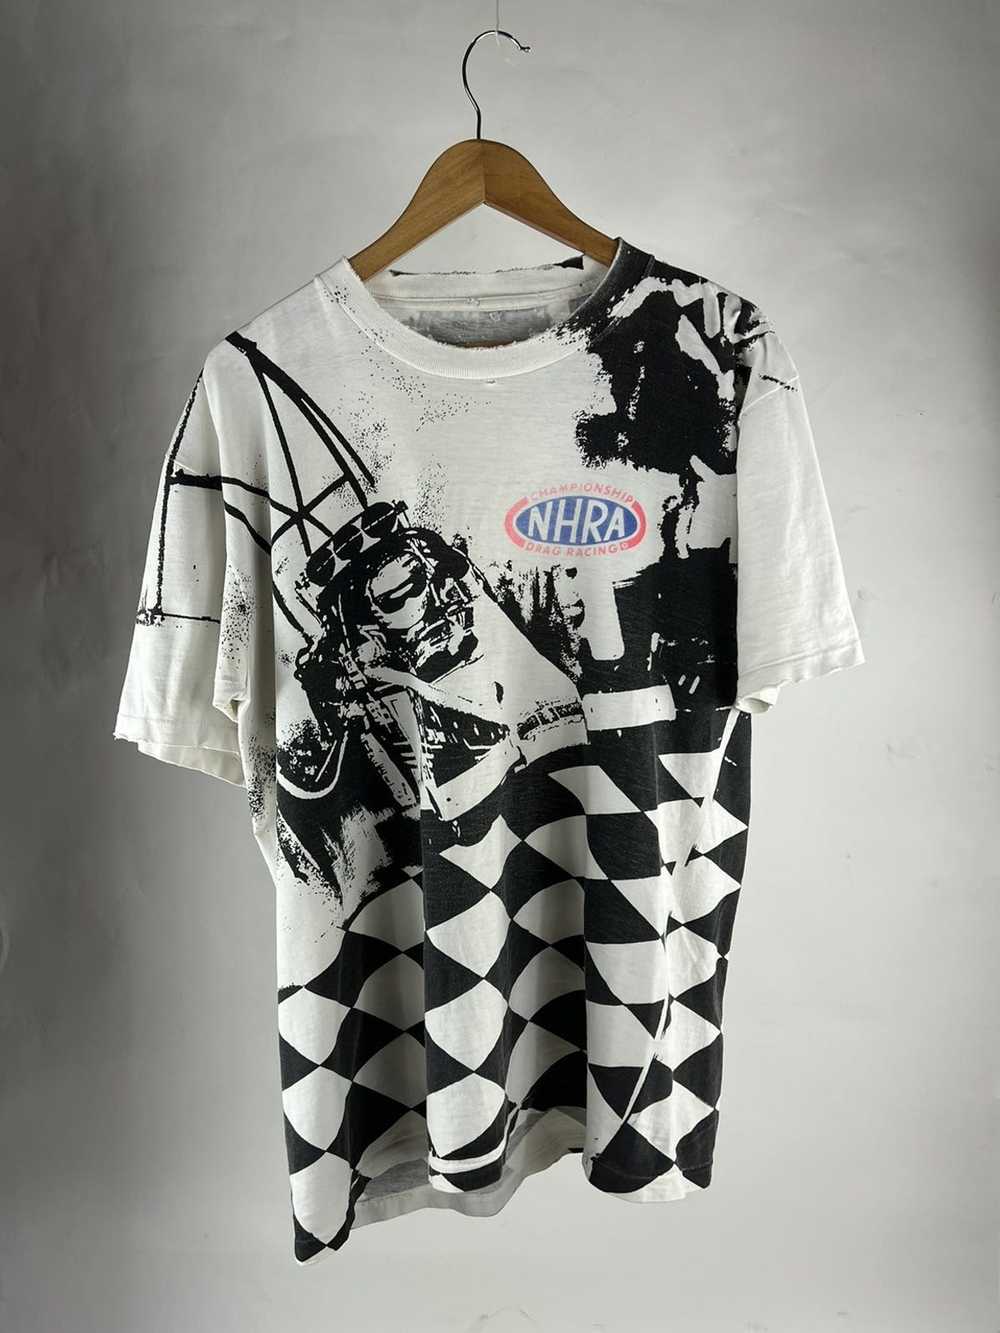 Vintage NHRA Drag Racing t shirt - image 1